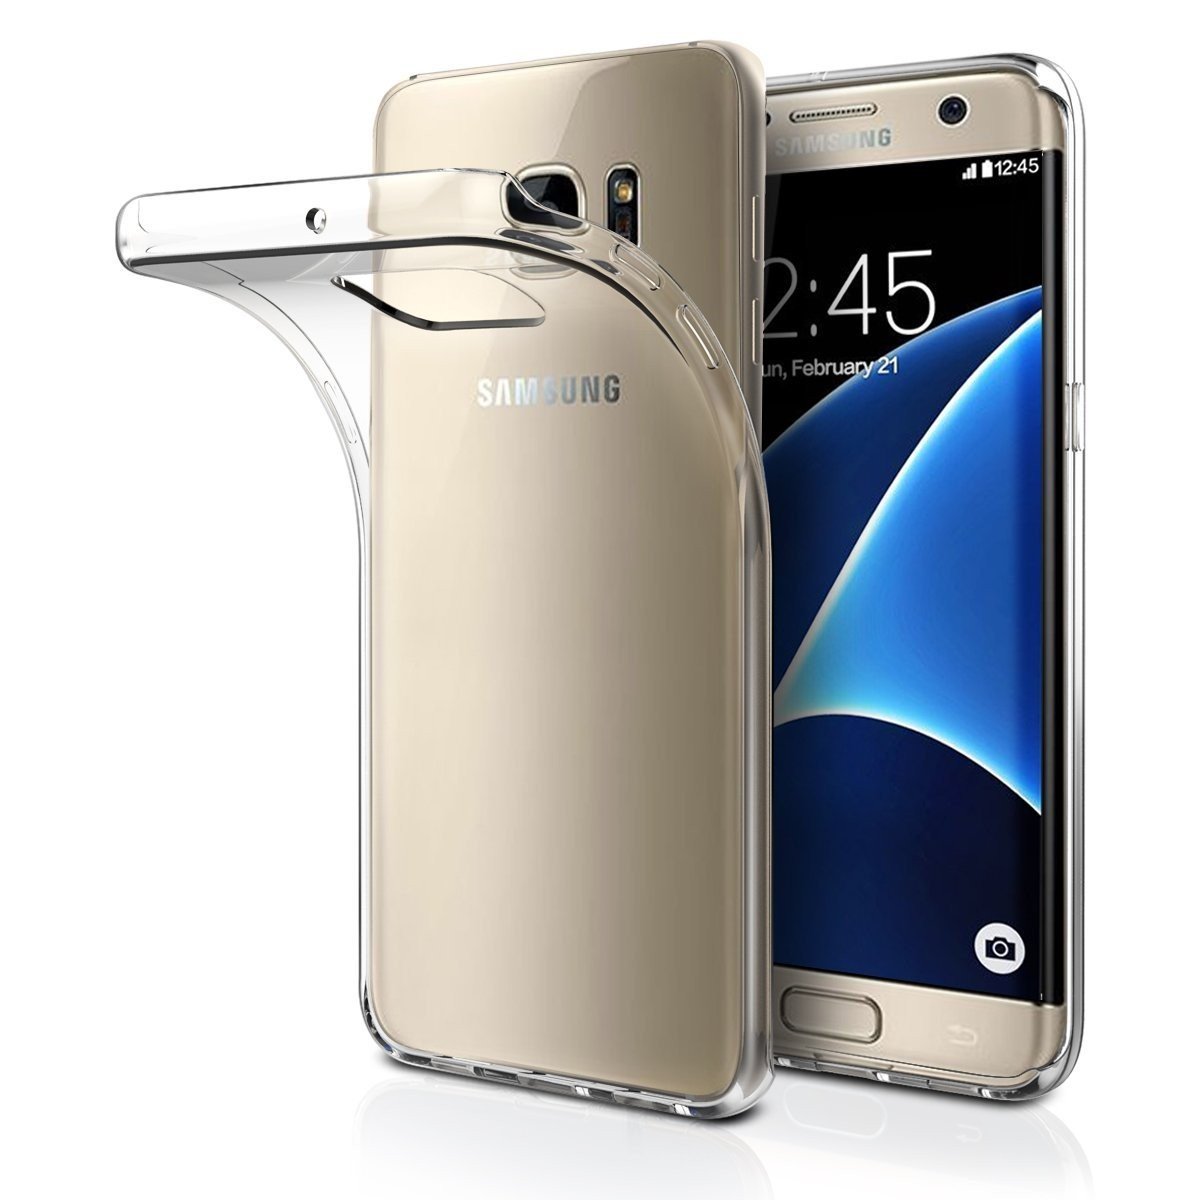 Aanpassing bunker Verrijking Hoesje Samsung Galaxy S7 Edge Flexi bumper - 0,3mm - doorzichtig |  MobileSupplies.nl